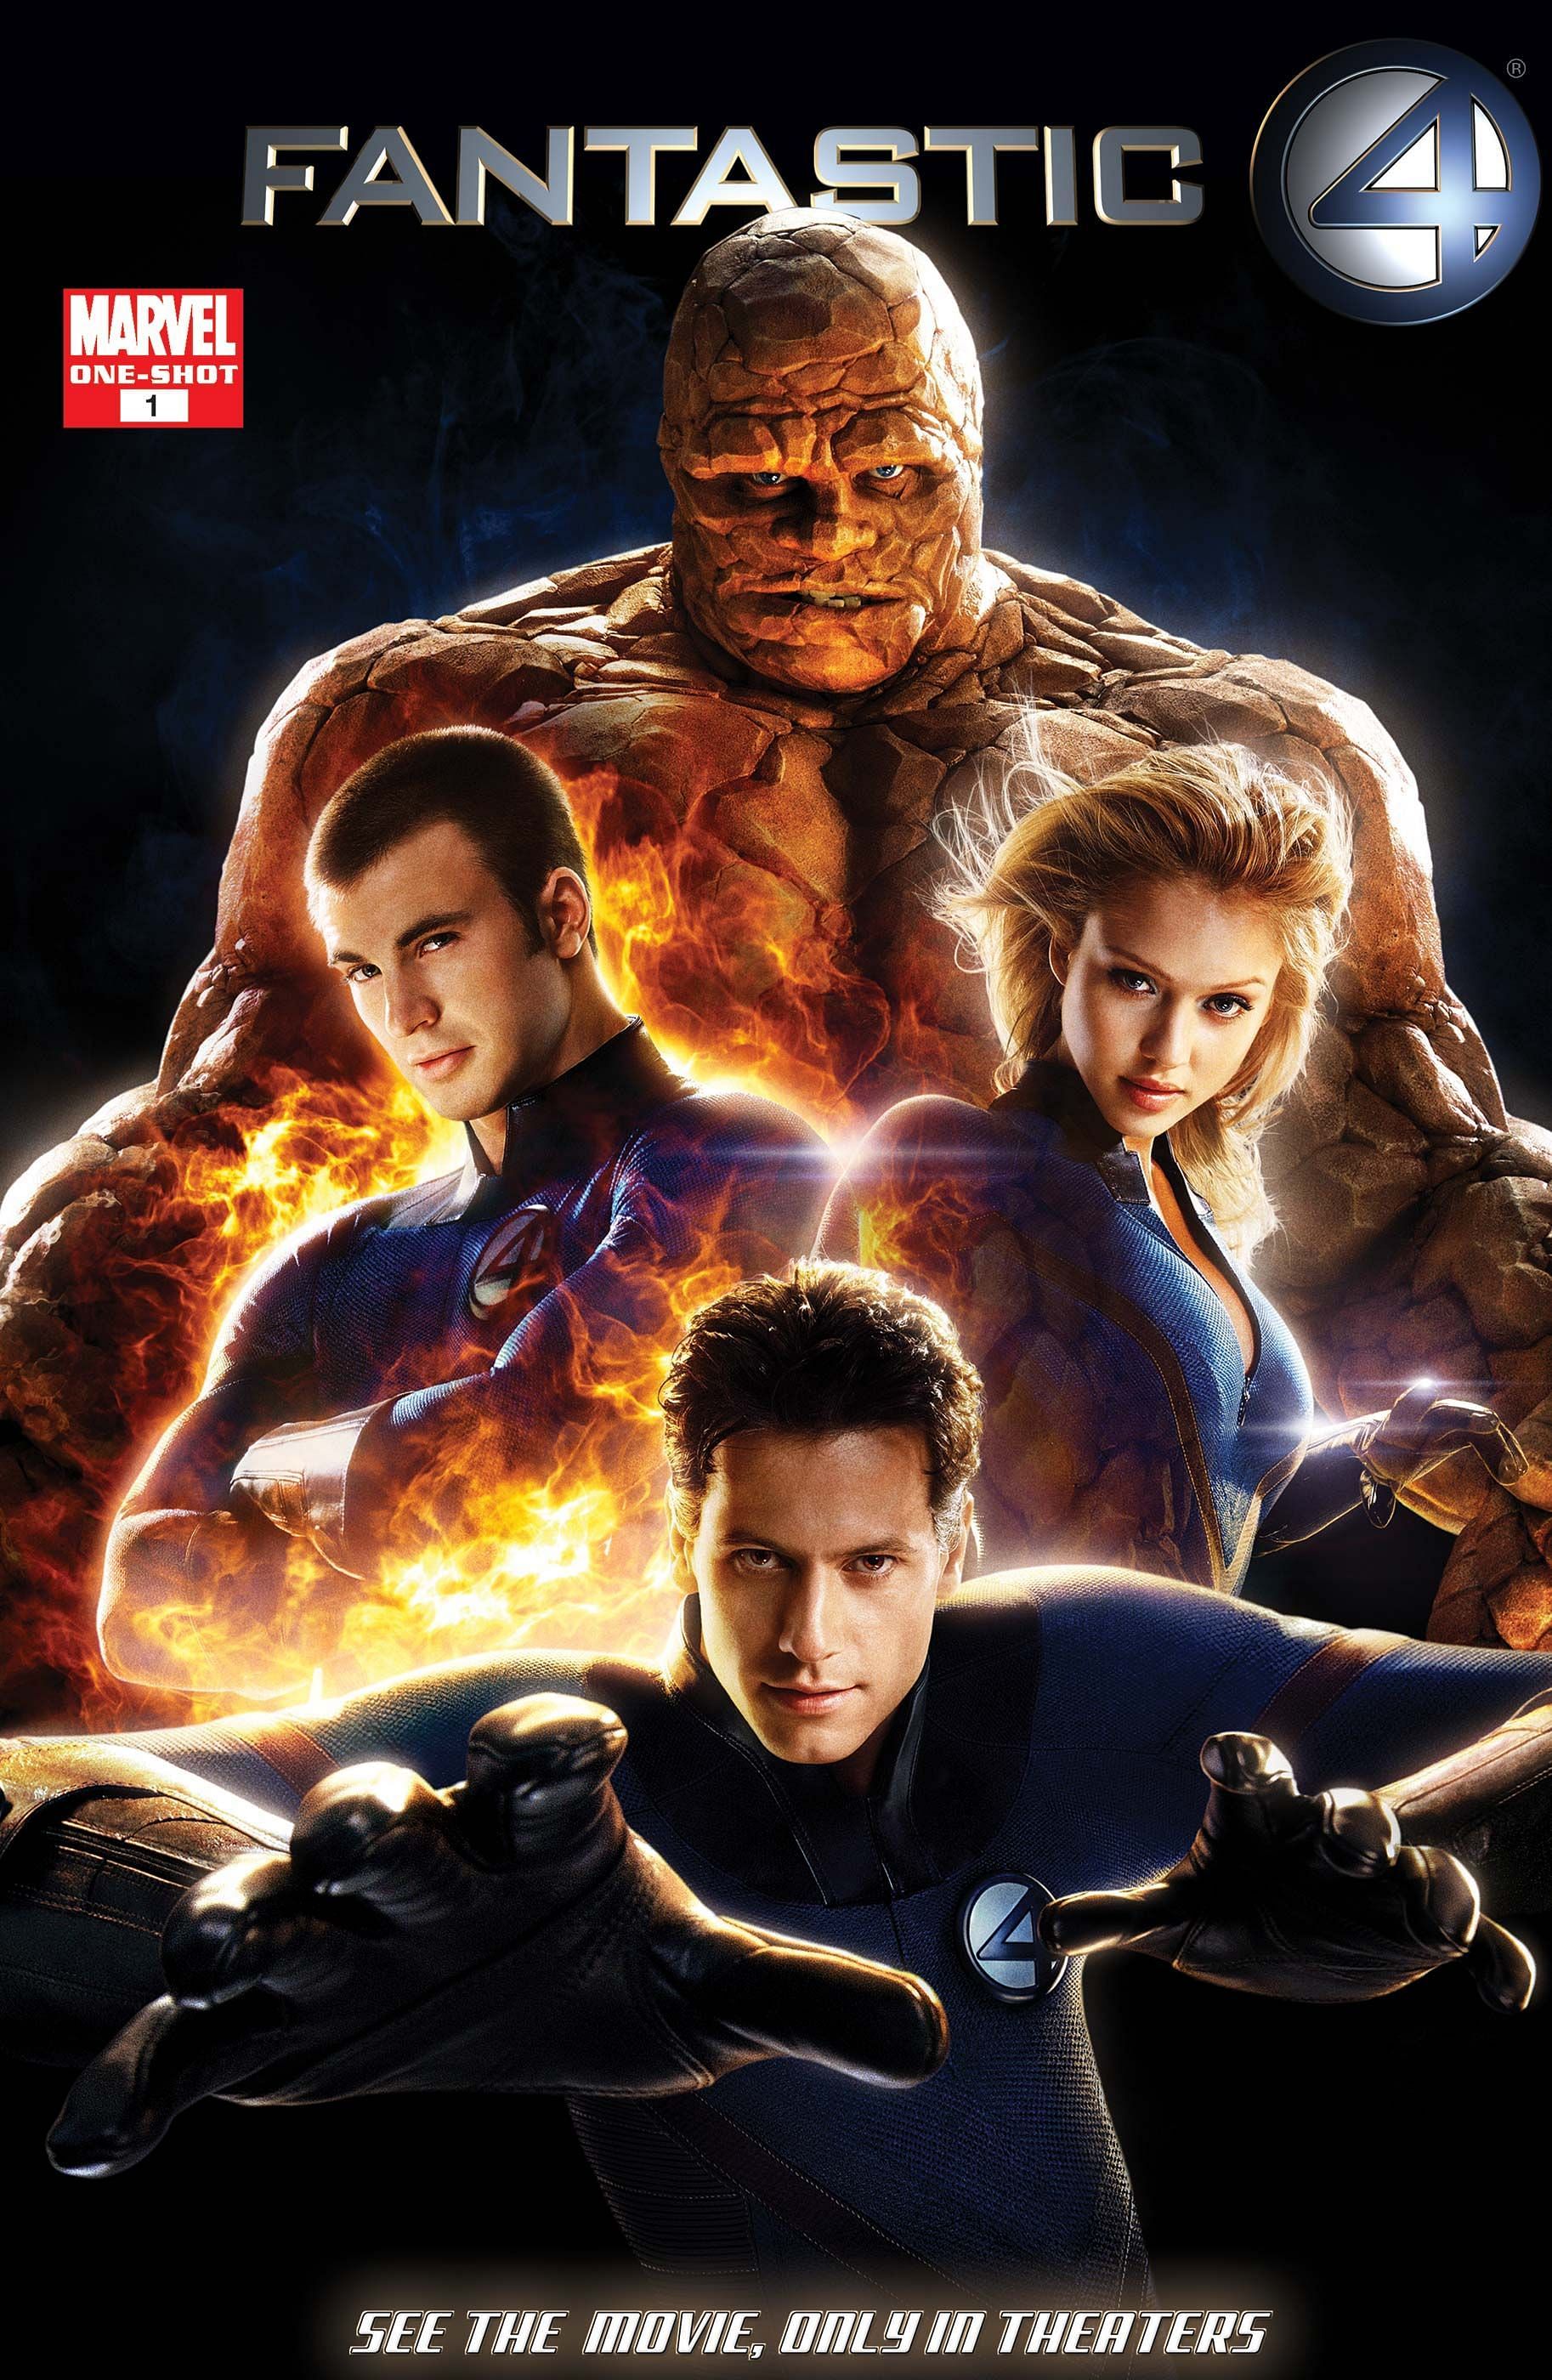 Fantastic Four, 2005 (Image via 20th Century Studios)